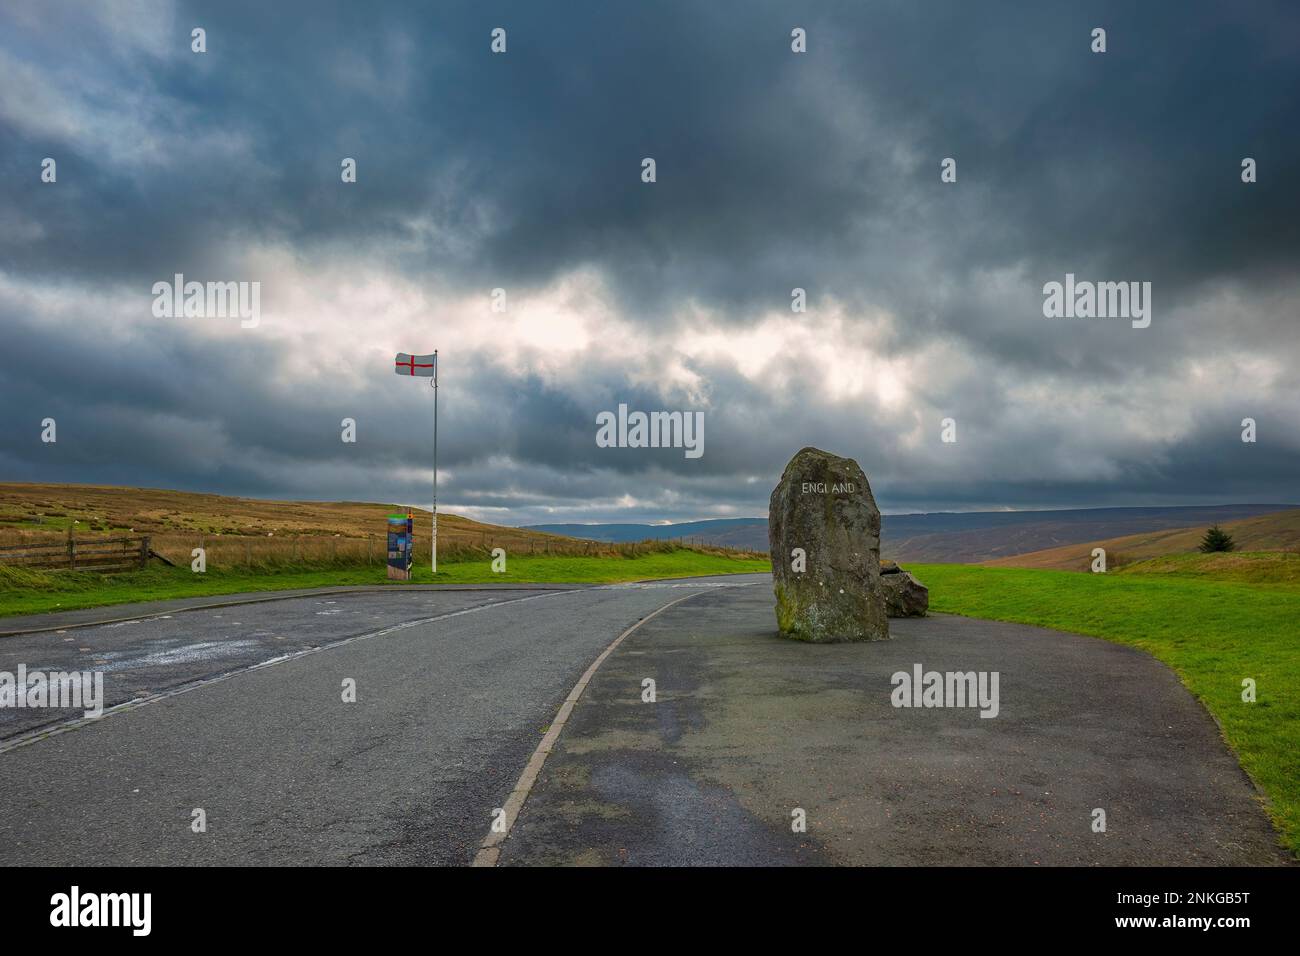 Großer Felsen mit dem Wort "England" und "English Flag", die auf der Straße unter den Sturmwolken winken Stockfoto